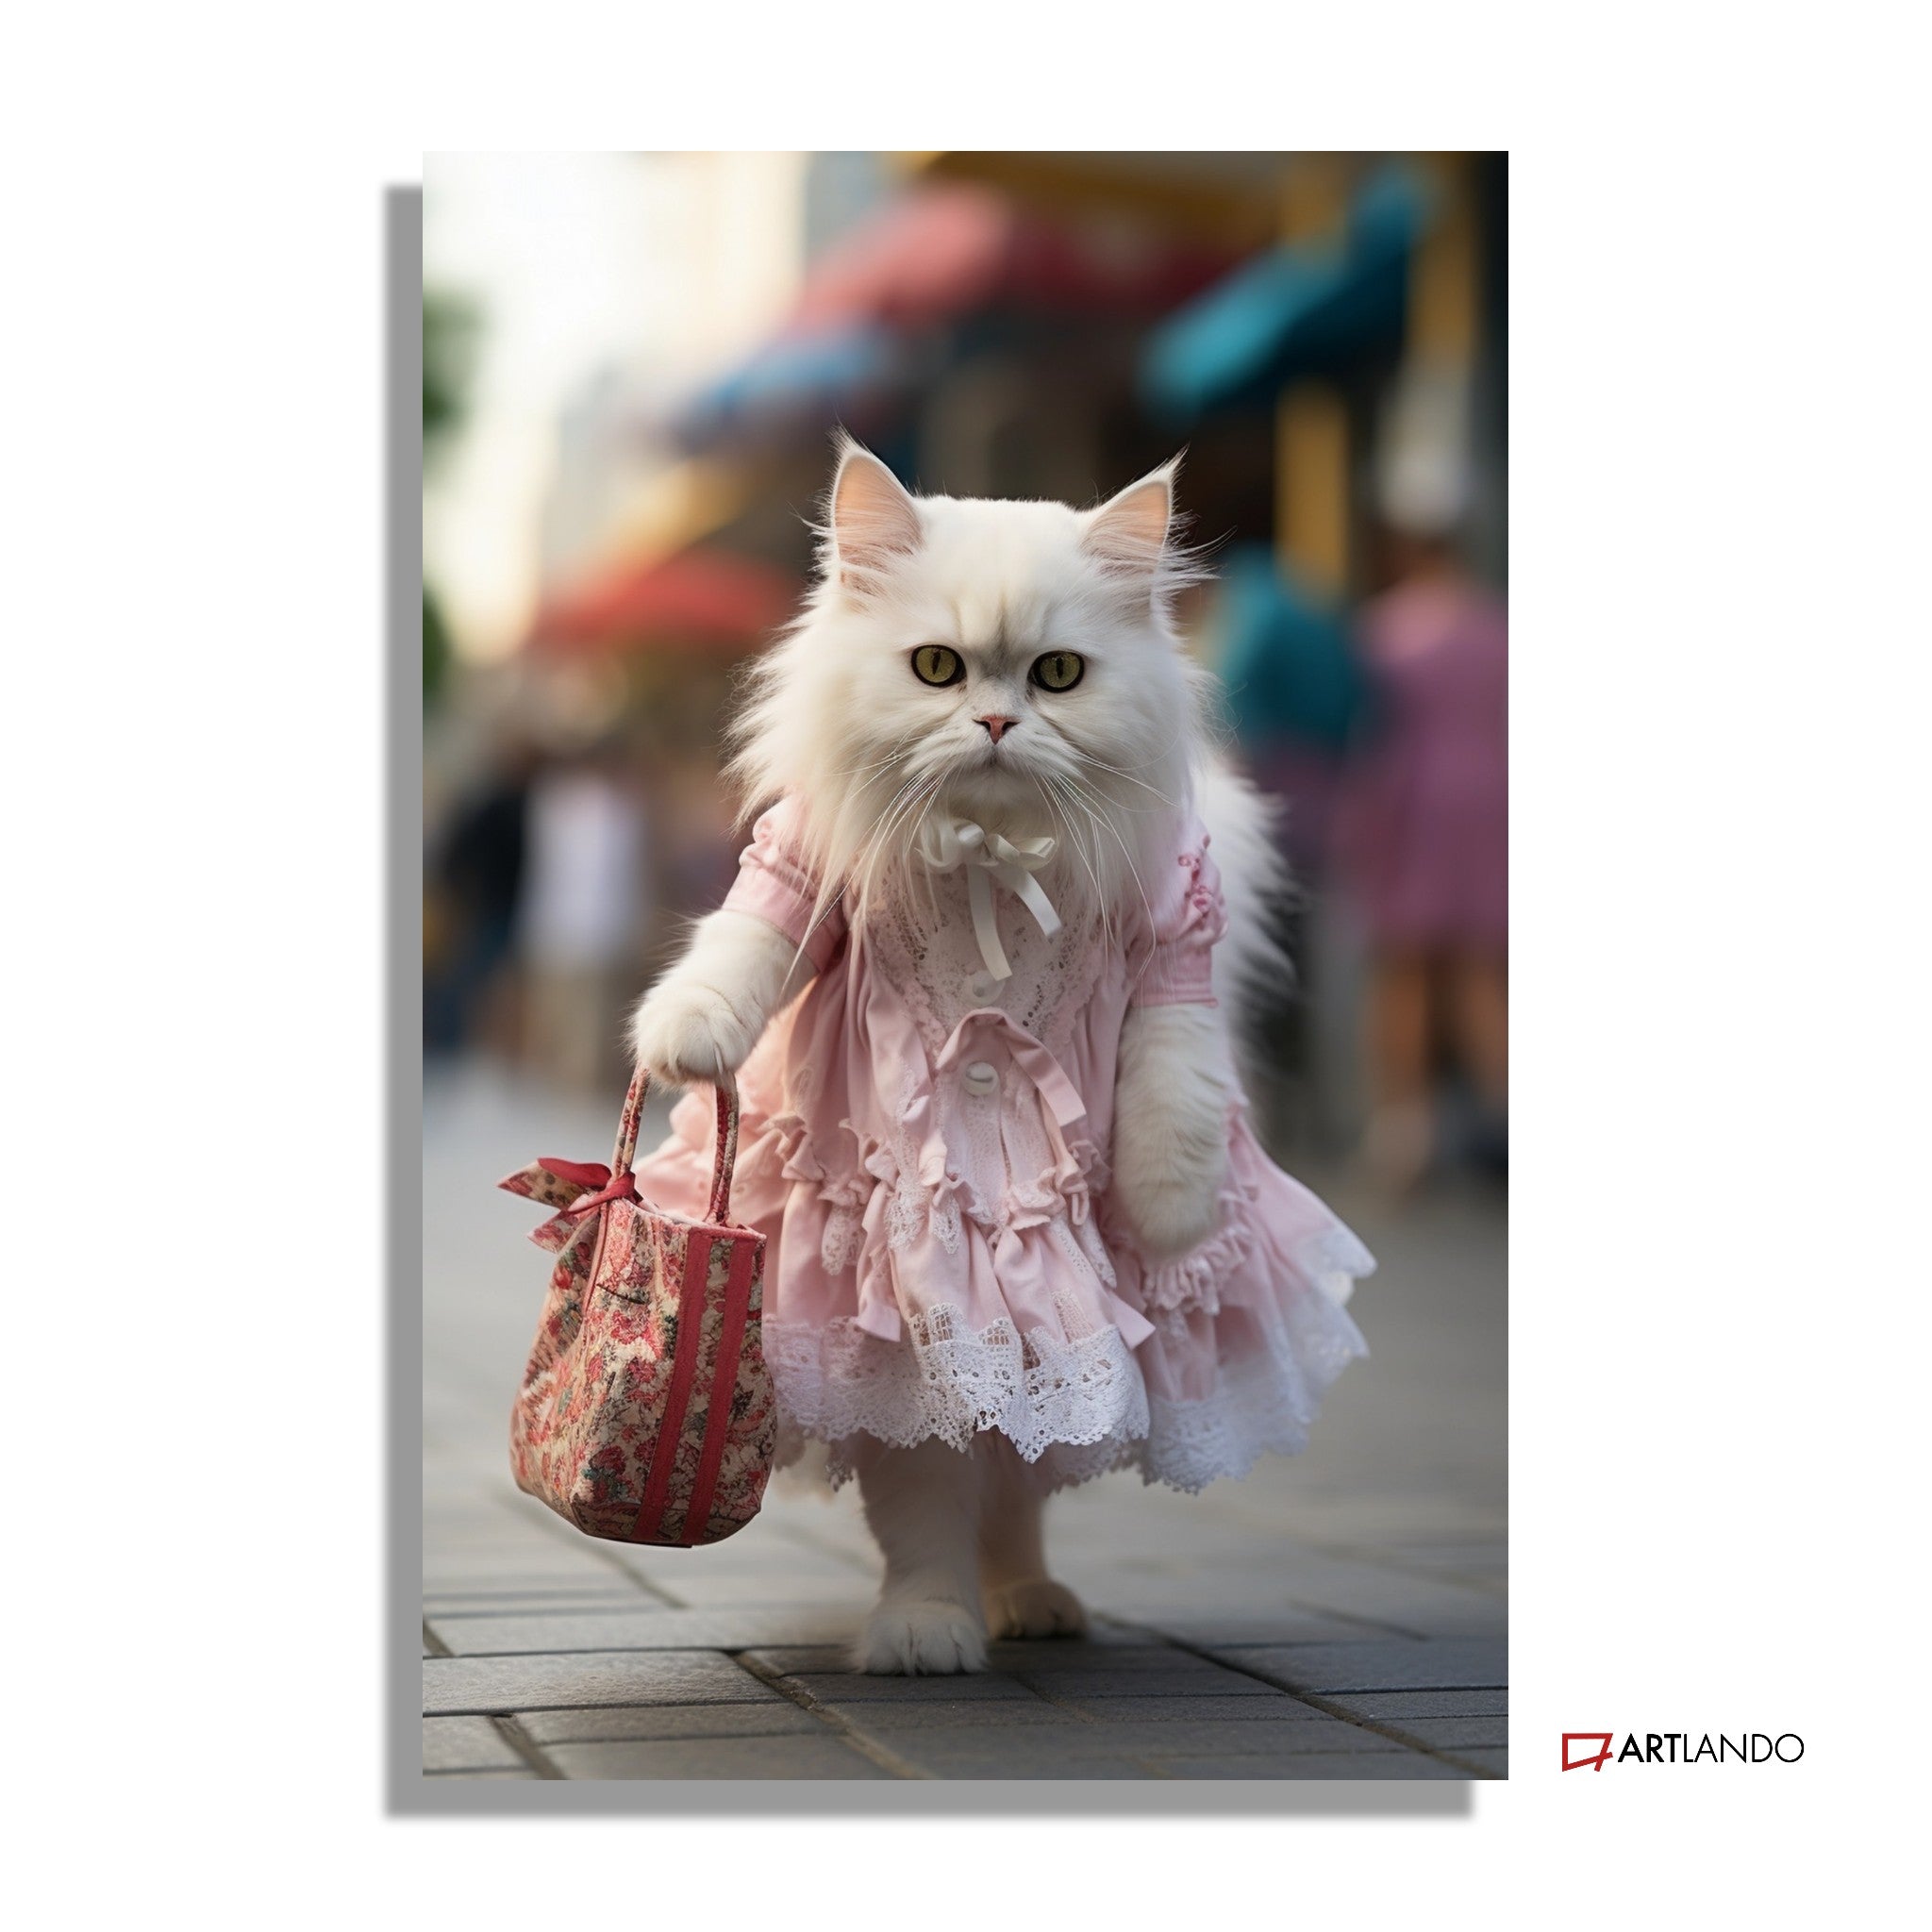 Katzendame in süßem Kleid mit Handtasche spaziert durch Innenstadt